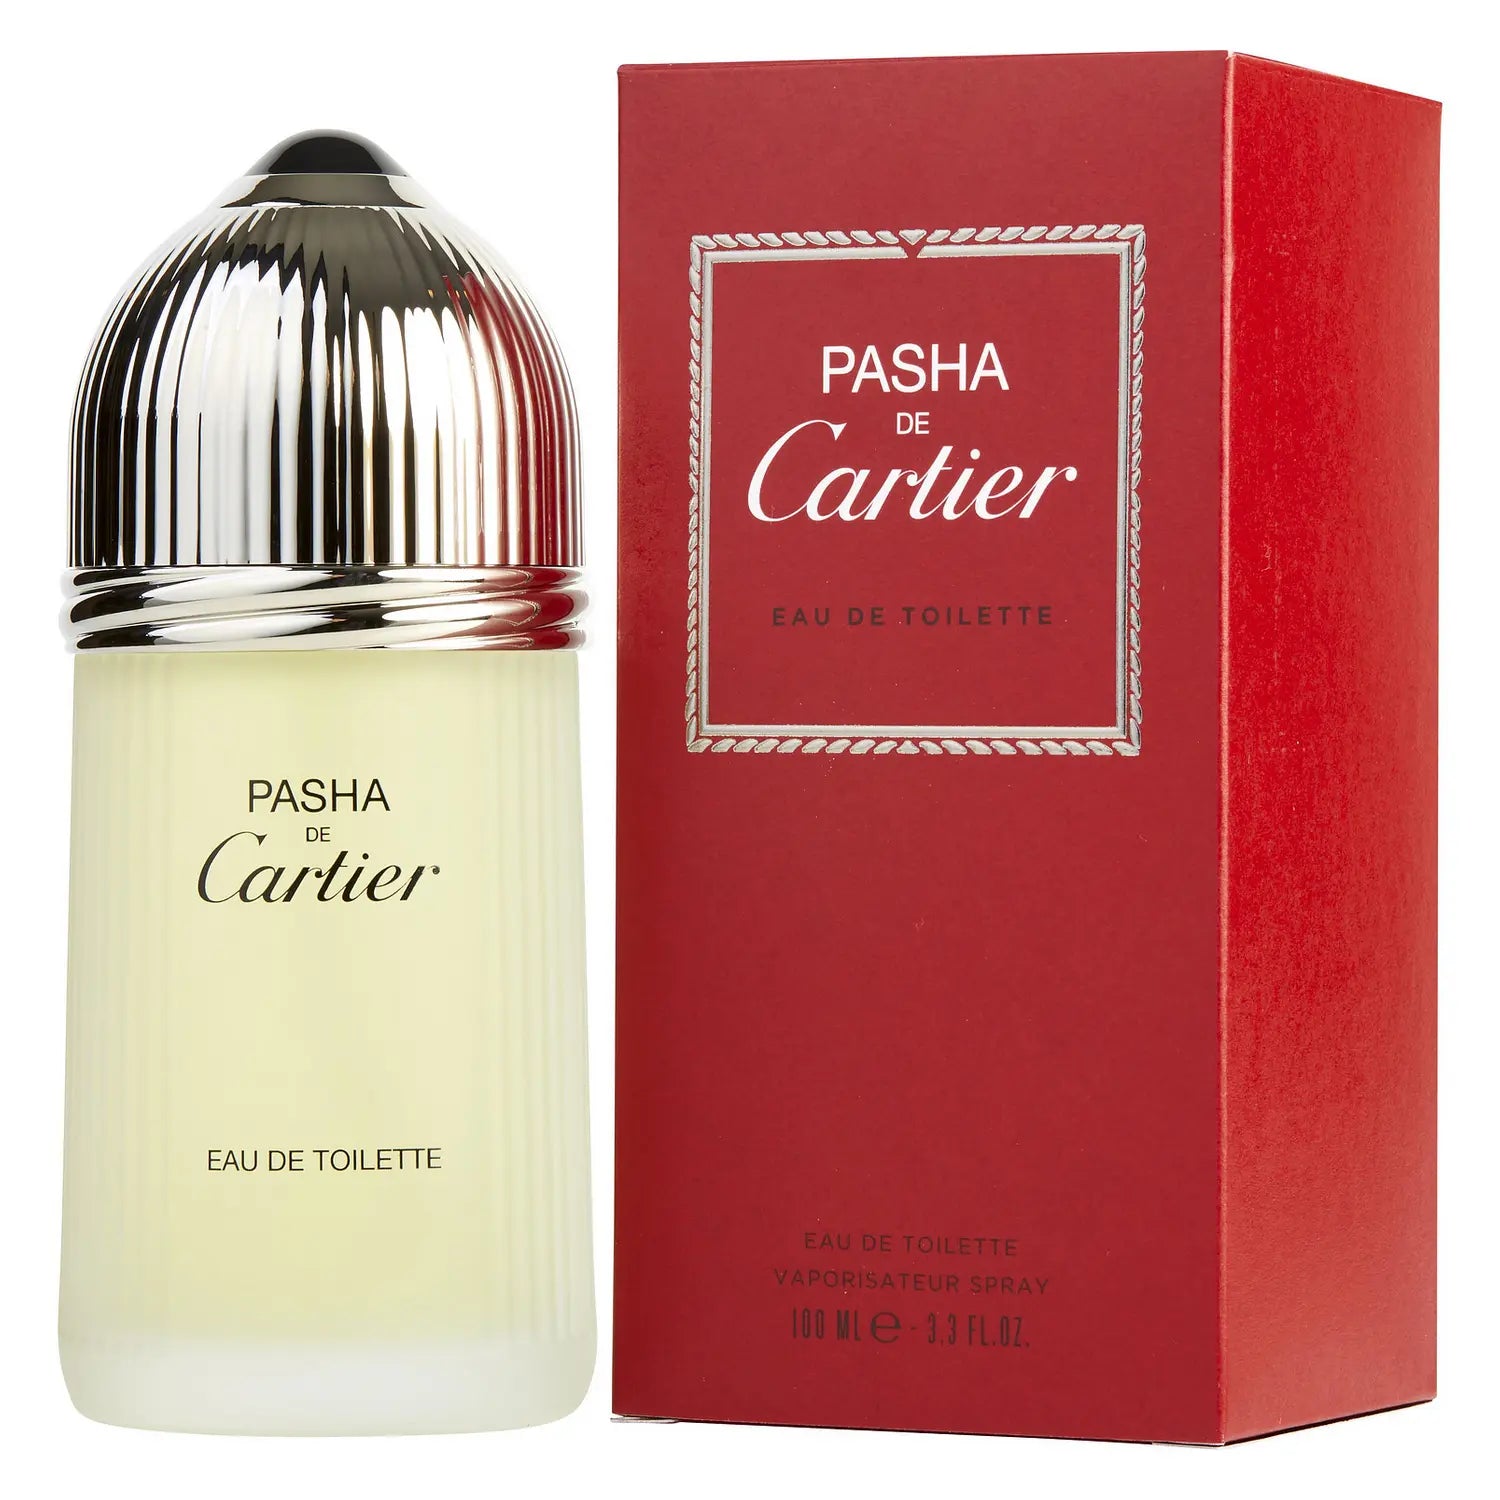 Pasha de Cartier by Cartier 3.3 oz EDT Spray for Men